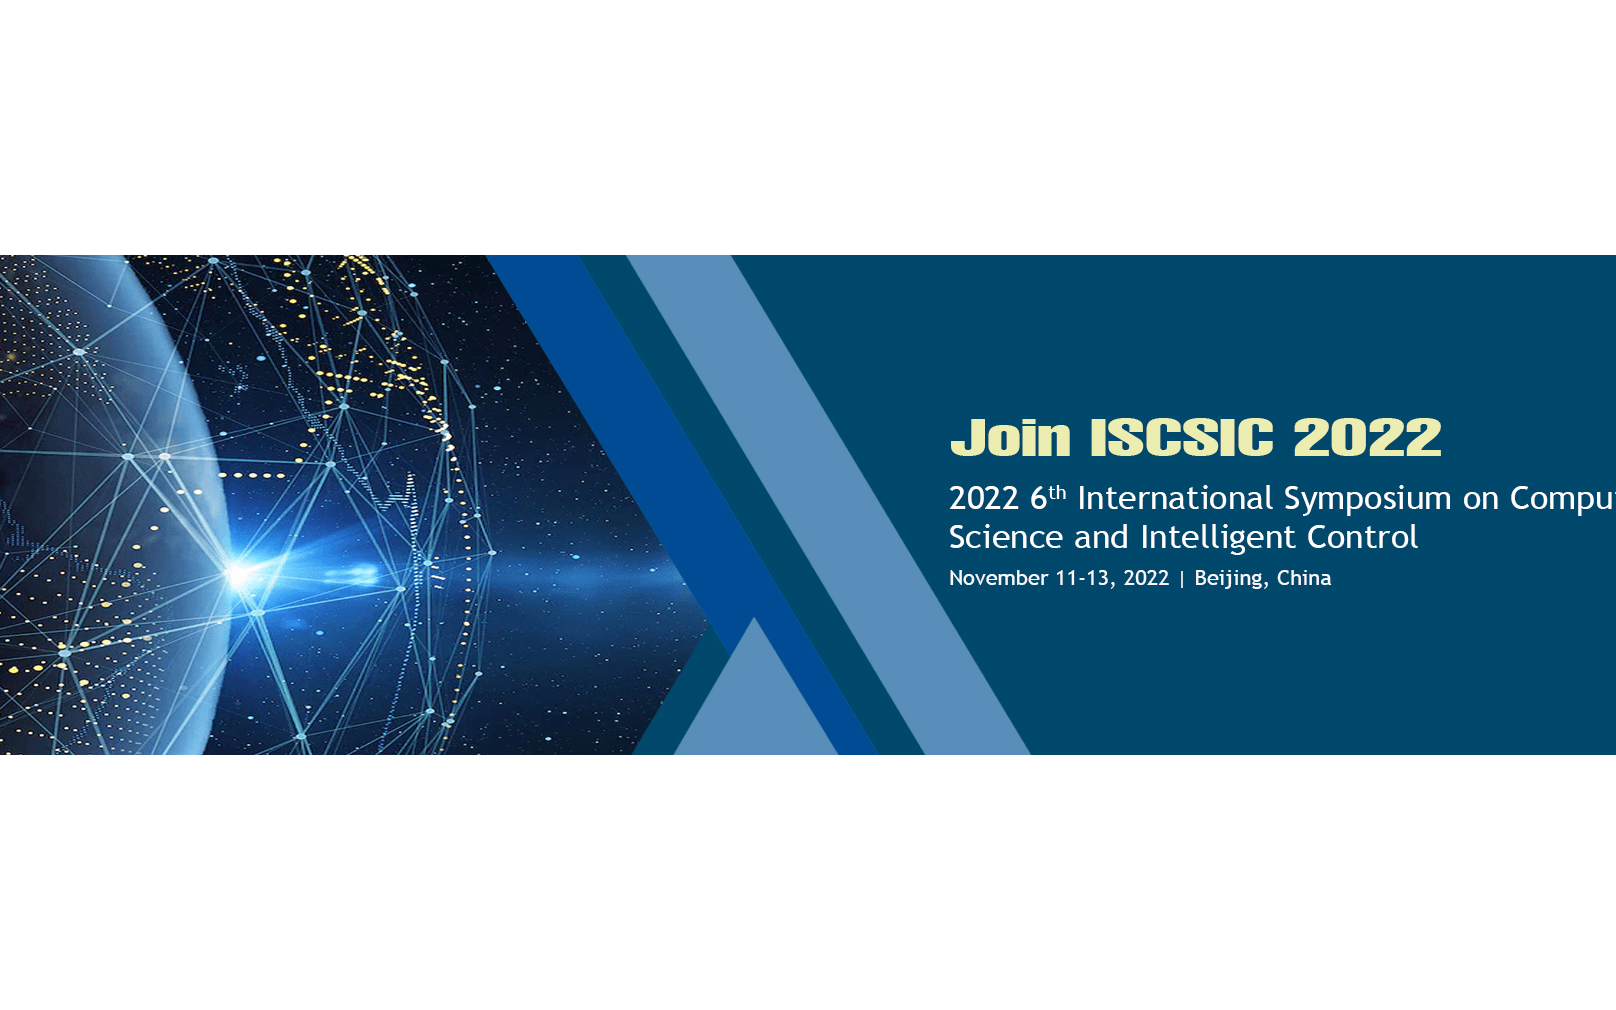 【EI会议】2022年第六届计算机科学与智能控制国际会议(ISCSIC 2022)